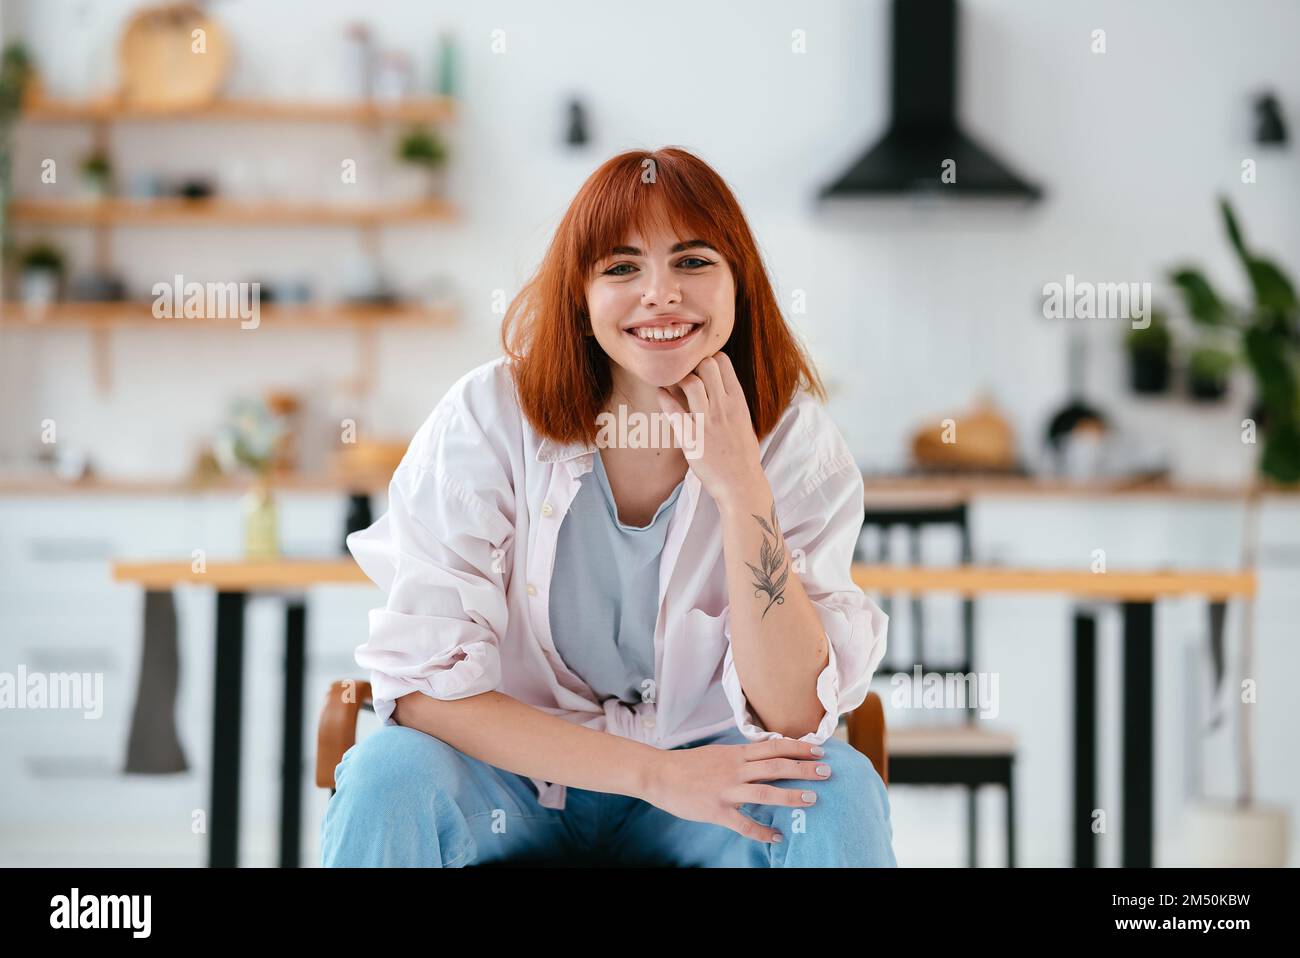 Porträt einer wunderschönen Frau, die auf einem Stuhl in einer modernen Küche im Hintergrund sitzt Stockfoto